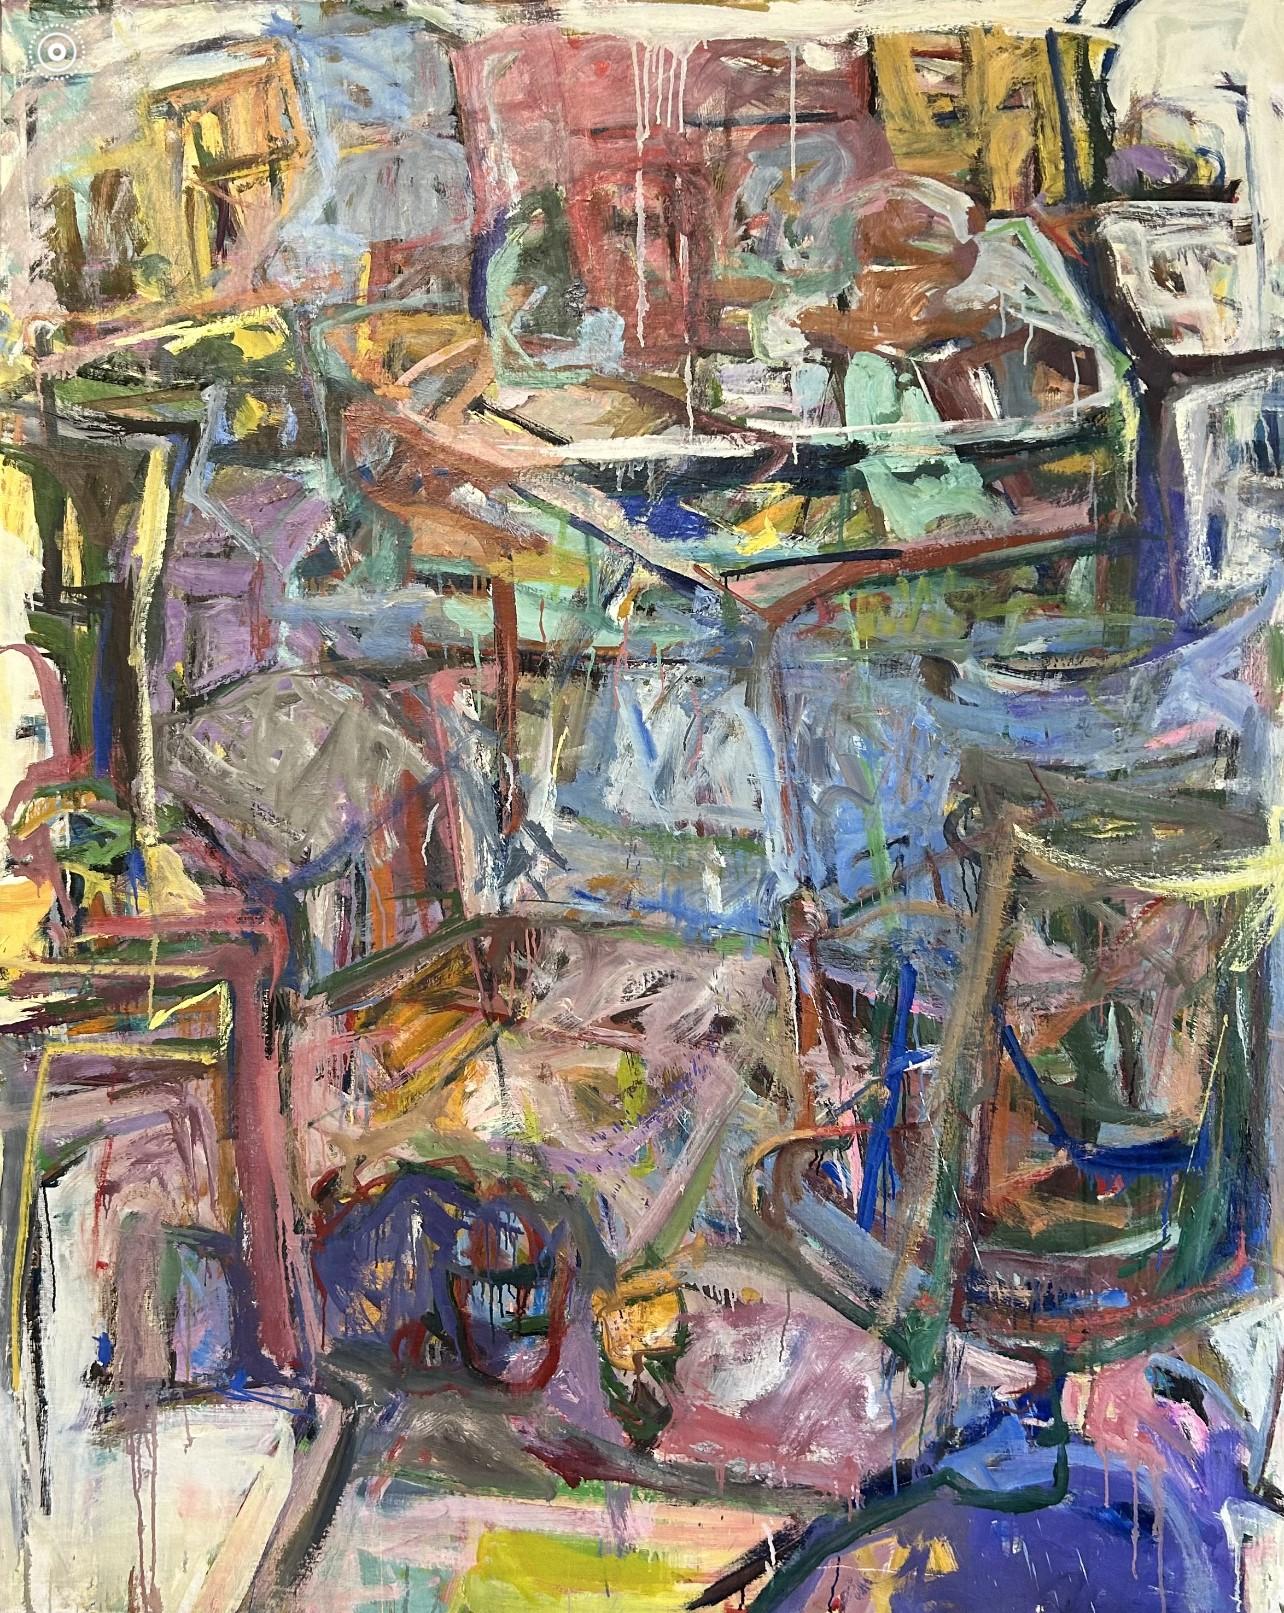 Abstract Painting Diana Kurz - Sans titre, intérieur de studio abstrait